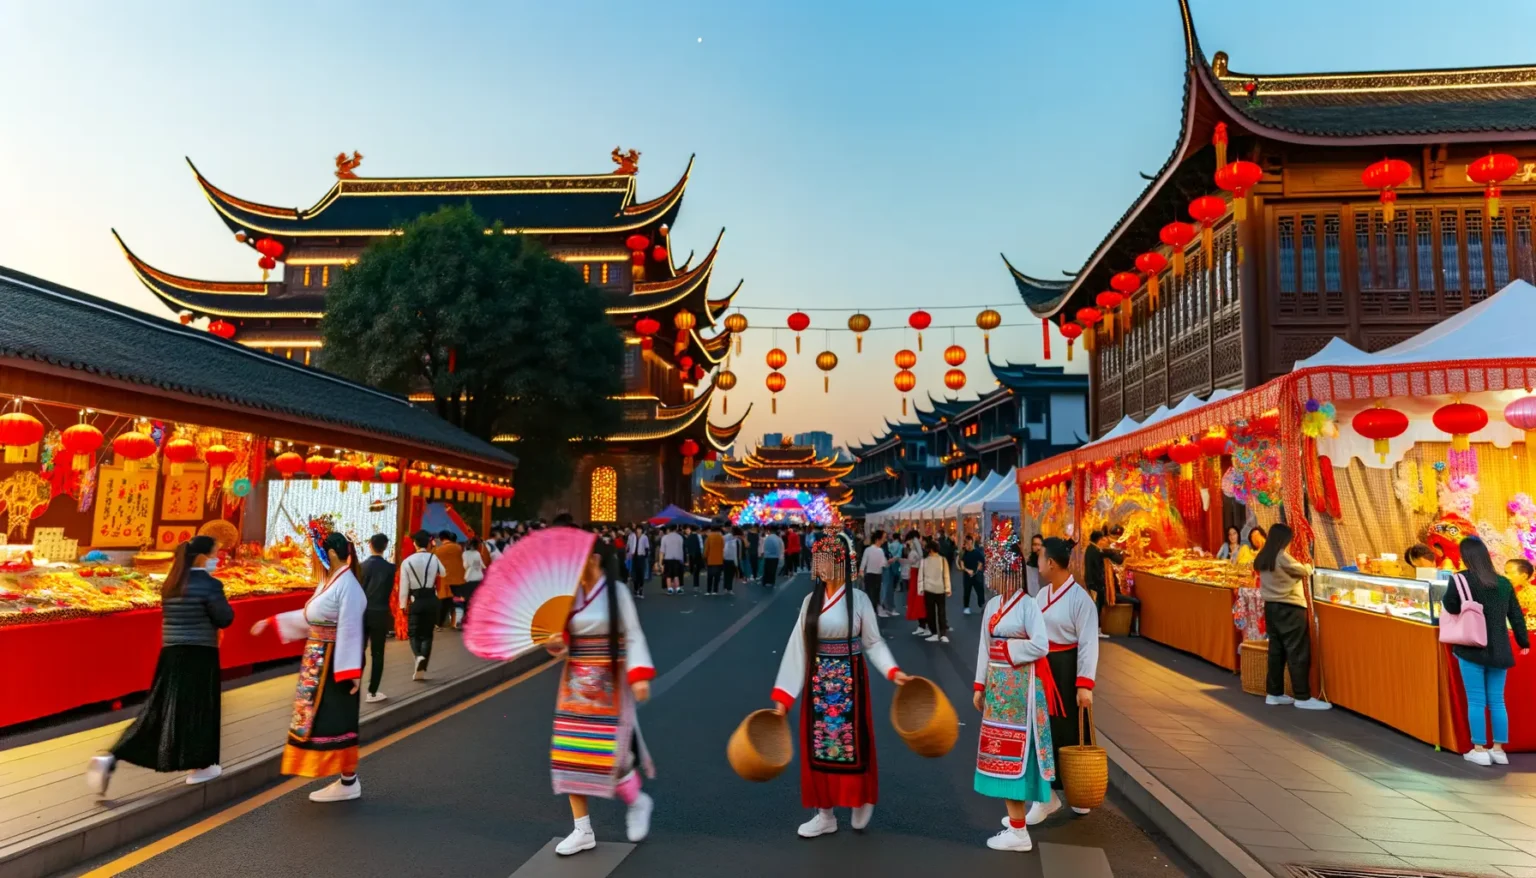 Belebte Marktszene in einer Straße mit traditioneller chinesischer Architektur bei Dämmerung. Menschen schlendern vorbei an Ständen, die mit roten Laternen dekoriert sind und eine Vielzahl von Waren anbieten. Einige Frauen in traditioneller Kleidung mit Fächern und Hüten geben der Szene eine kulturelle Note.